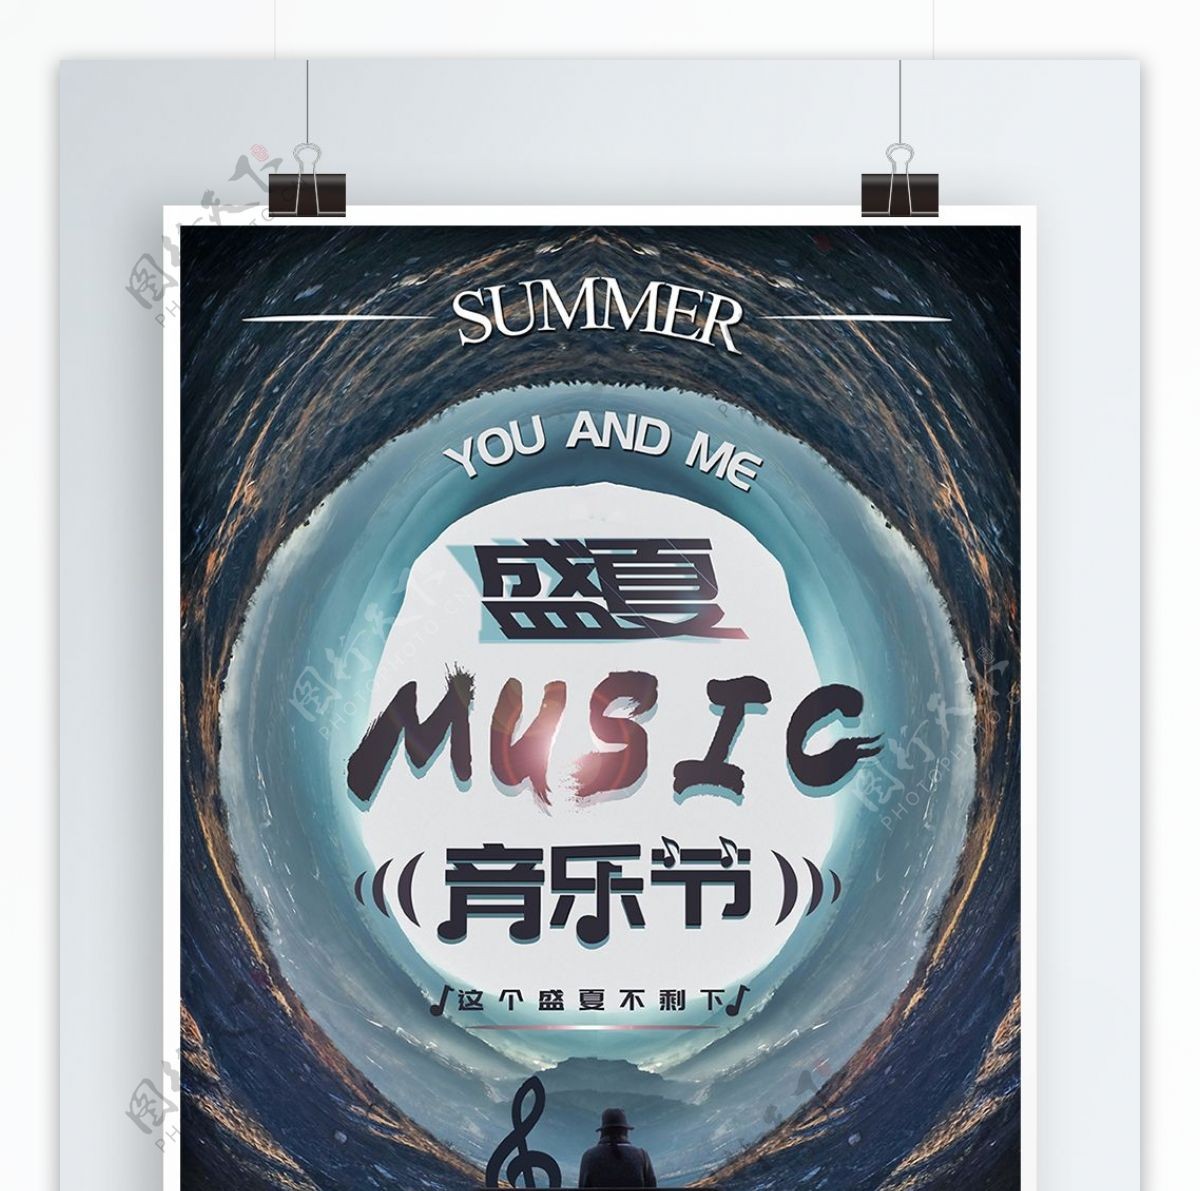 简约复古盛夏音乐节宣传海报